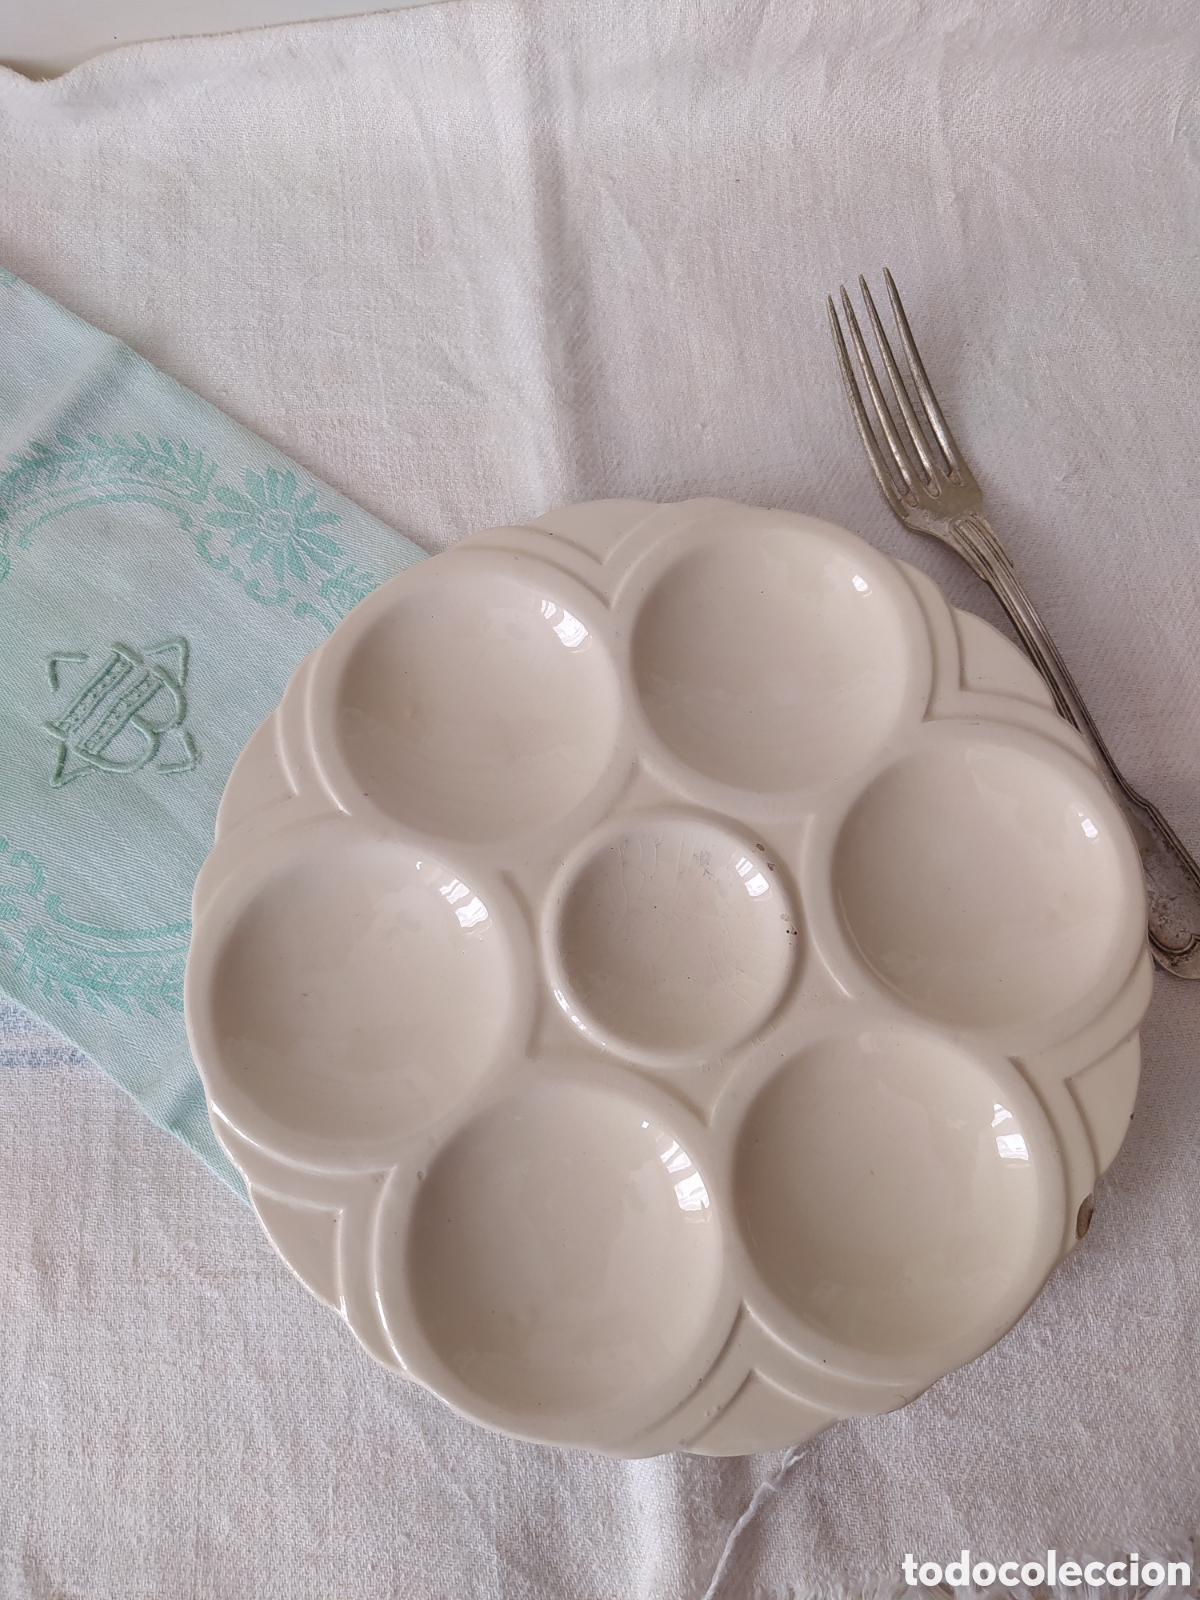 plato para huevos rellenos - Compra venta en todocoleccion